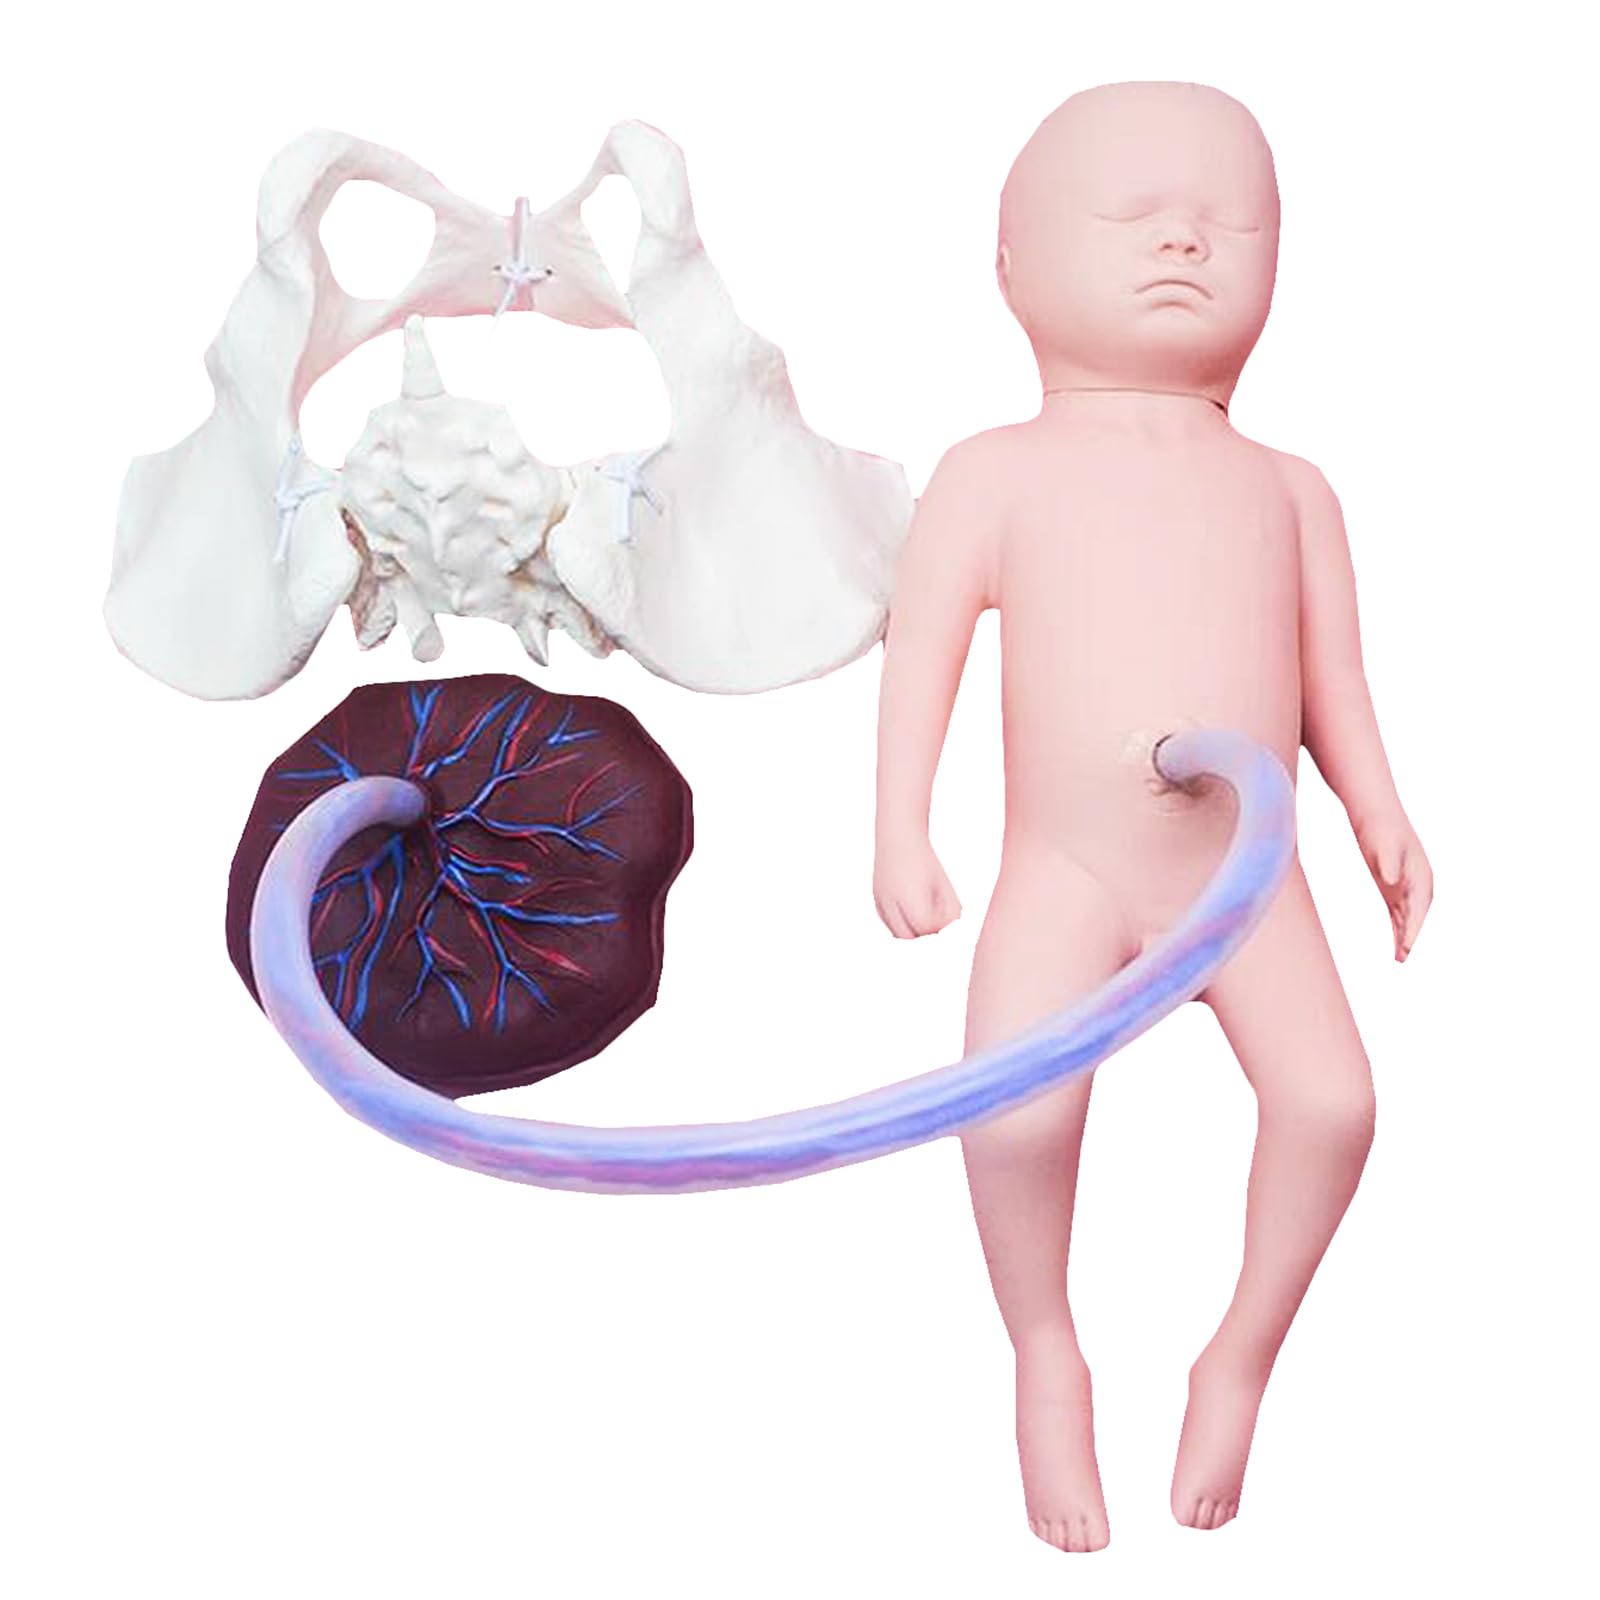 Neugeborenes Baby Modell mit Nabelschnur und Plazenta - Hebammen-Trainingsmodell - mit Frontanelle und hinterer Fontanelle (Junge)